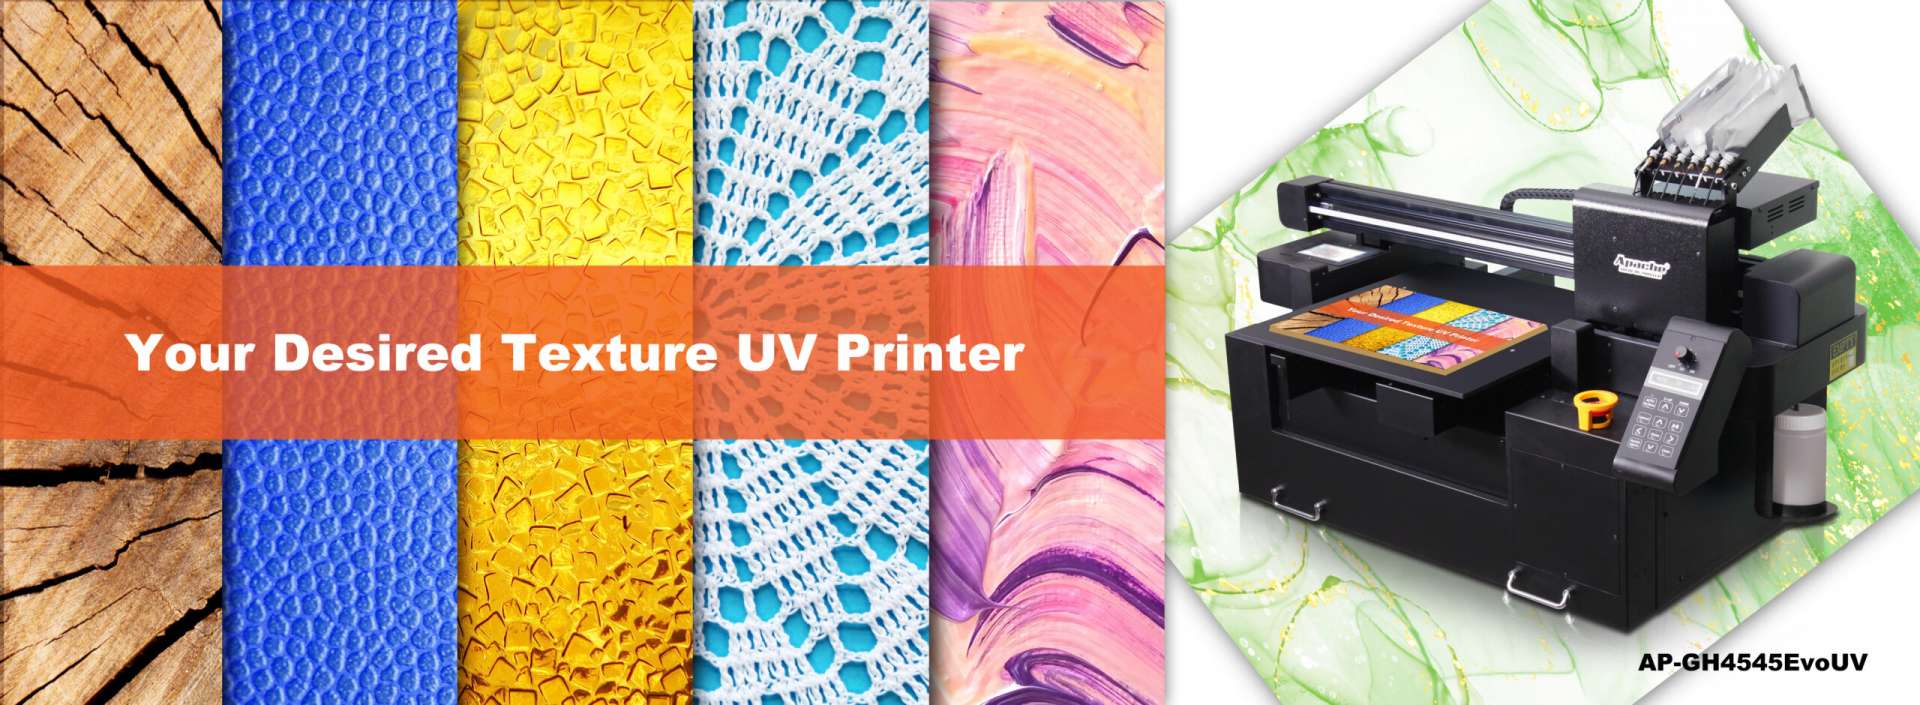 Apache Printer Flatbed UV AP-GH4545EvoUV